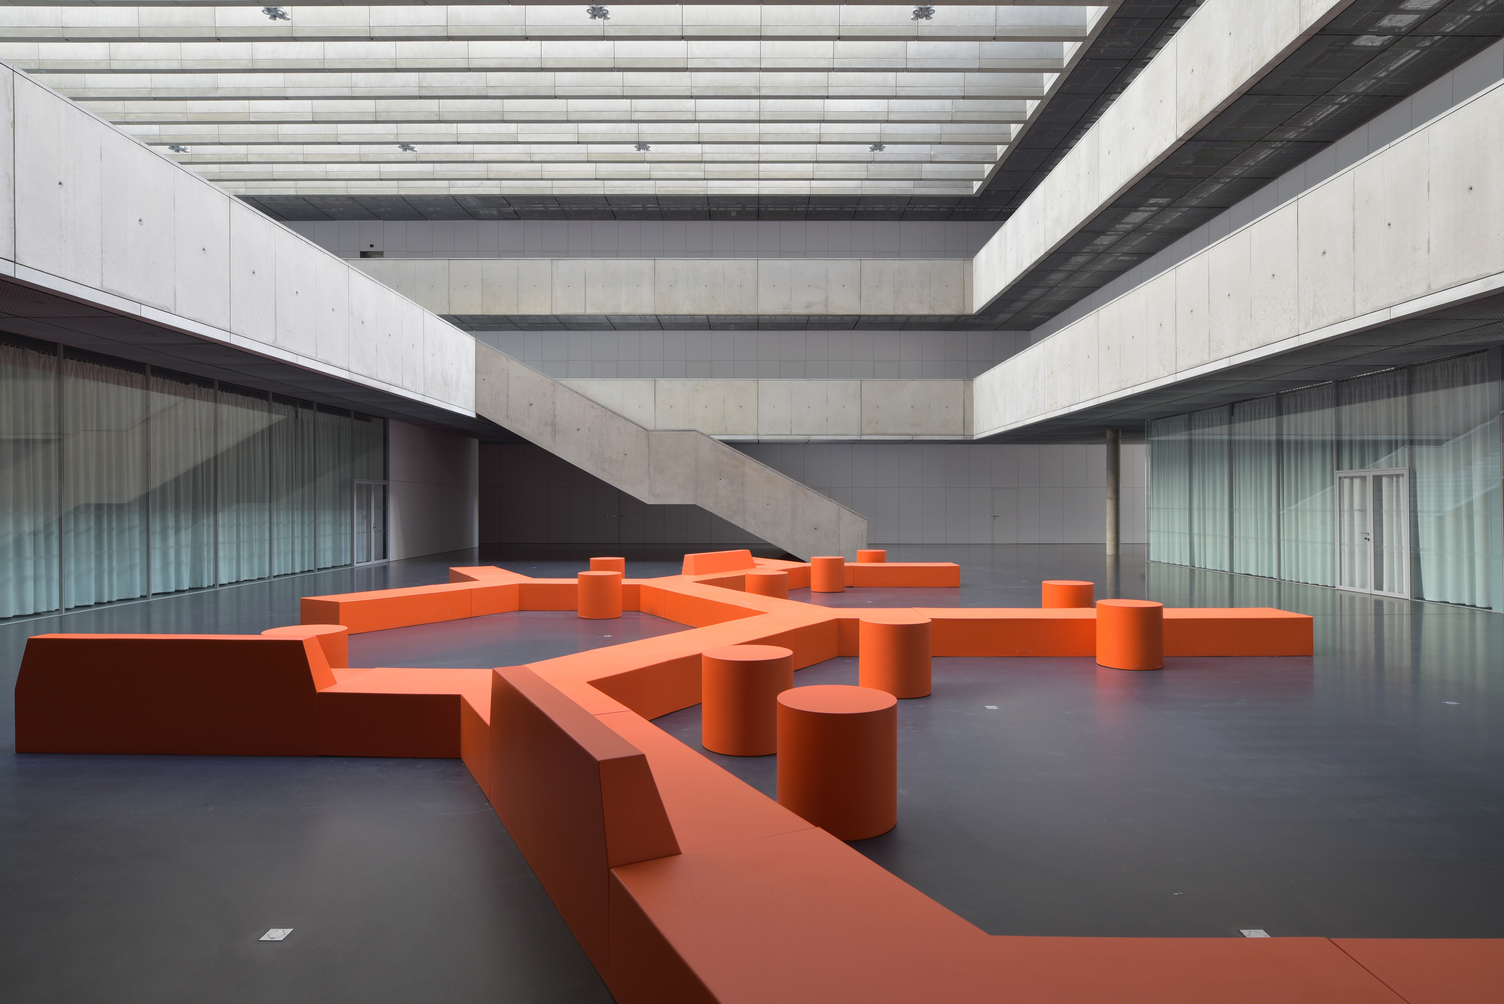 鲜明的橘色 Sixinch 模组化座椅组，为大厅空间带来对比鲜明的个性活力。